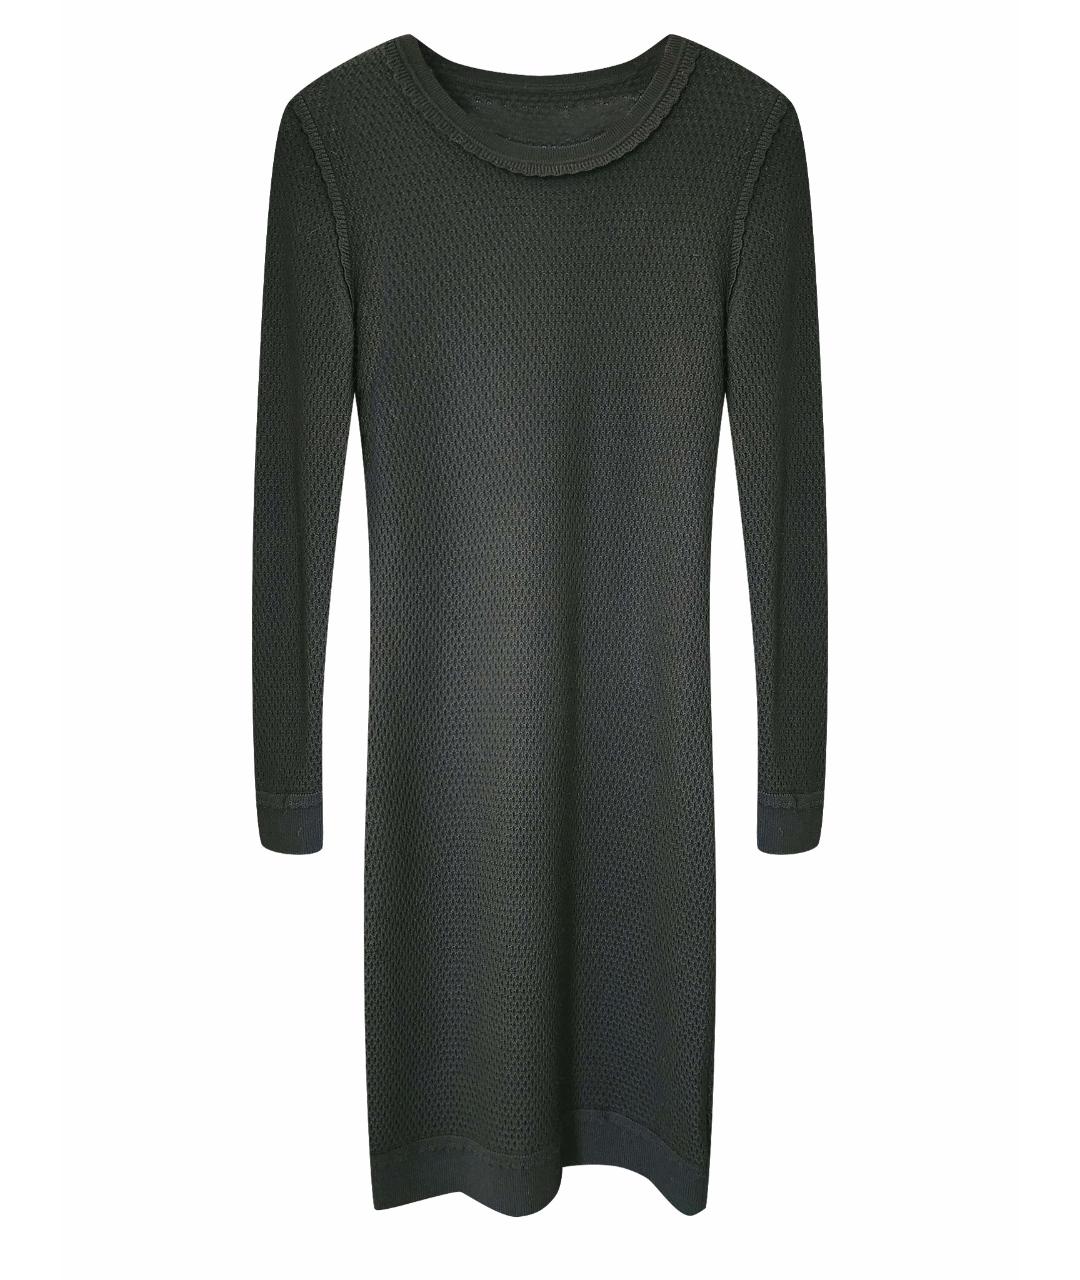 MICHAEL KORS Антрацитовое шерстяное повседневное платье, фото 1